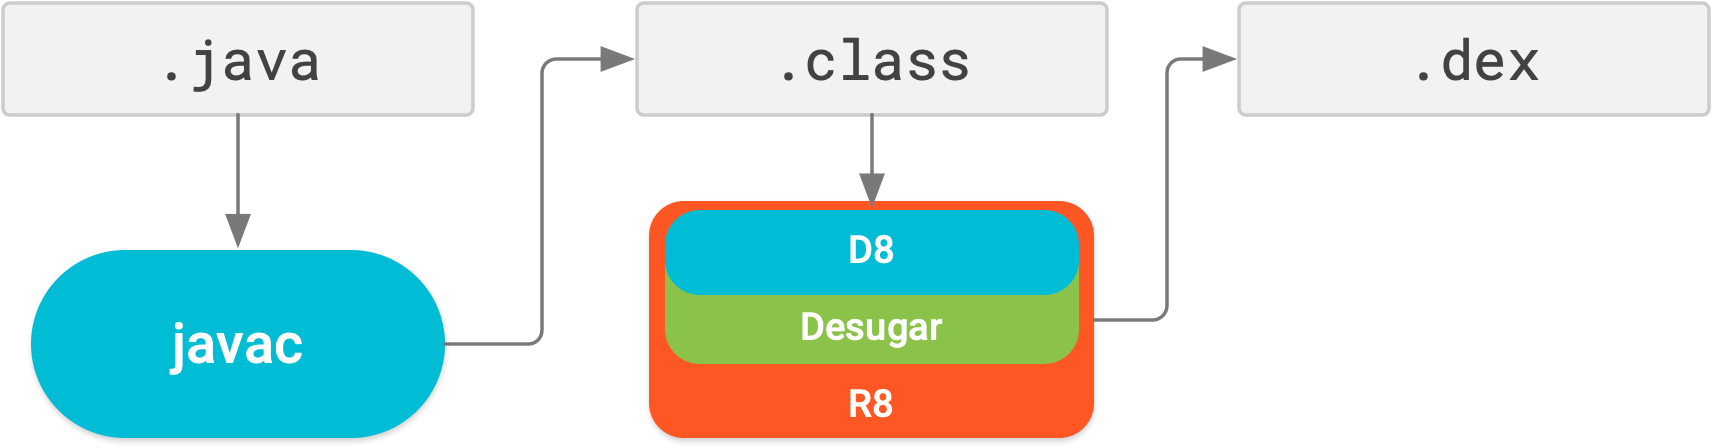 Với R8, việc đơn giản hoá, rút gọn, làm rối mã nguồn, tối ưu hoá và tạo tệp dex đều được thực hiện trong một bước biên dịch.